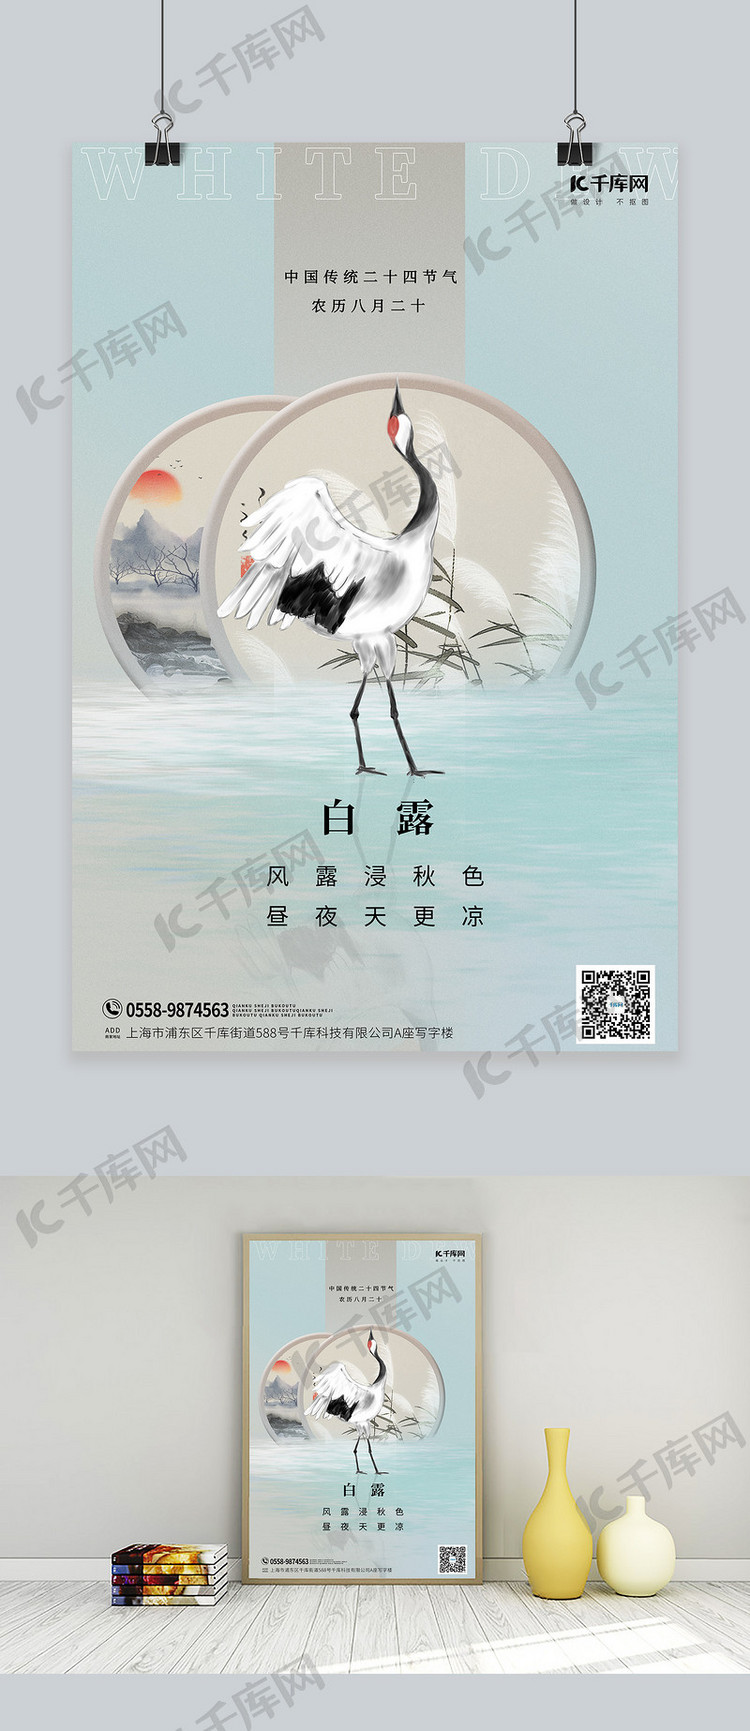 白露节气白鹤蓝色中国风海报